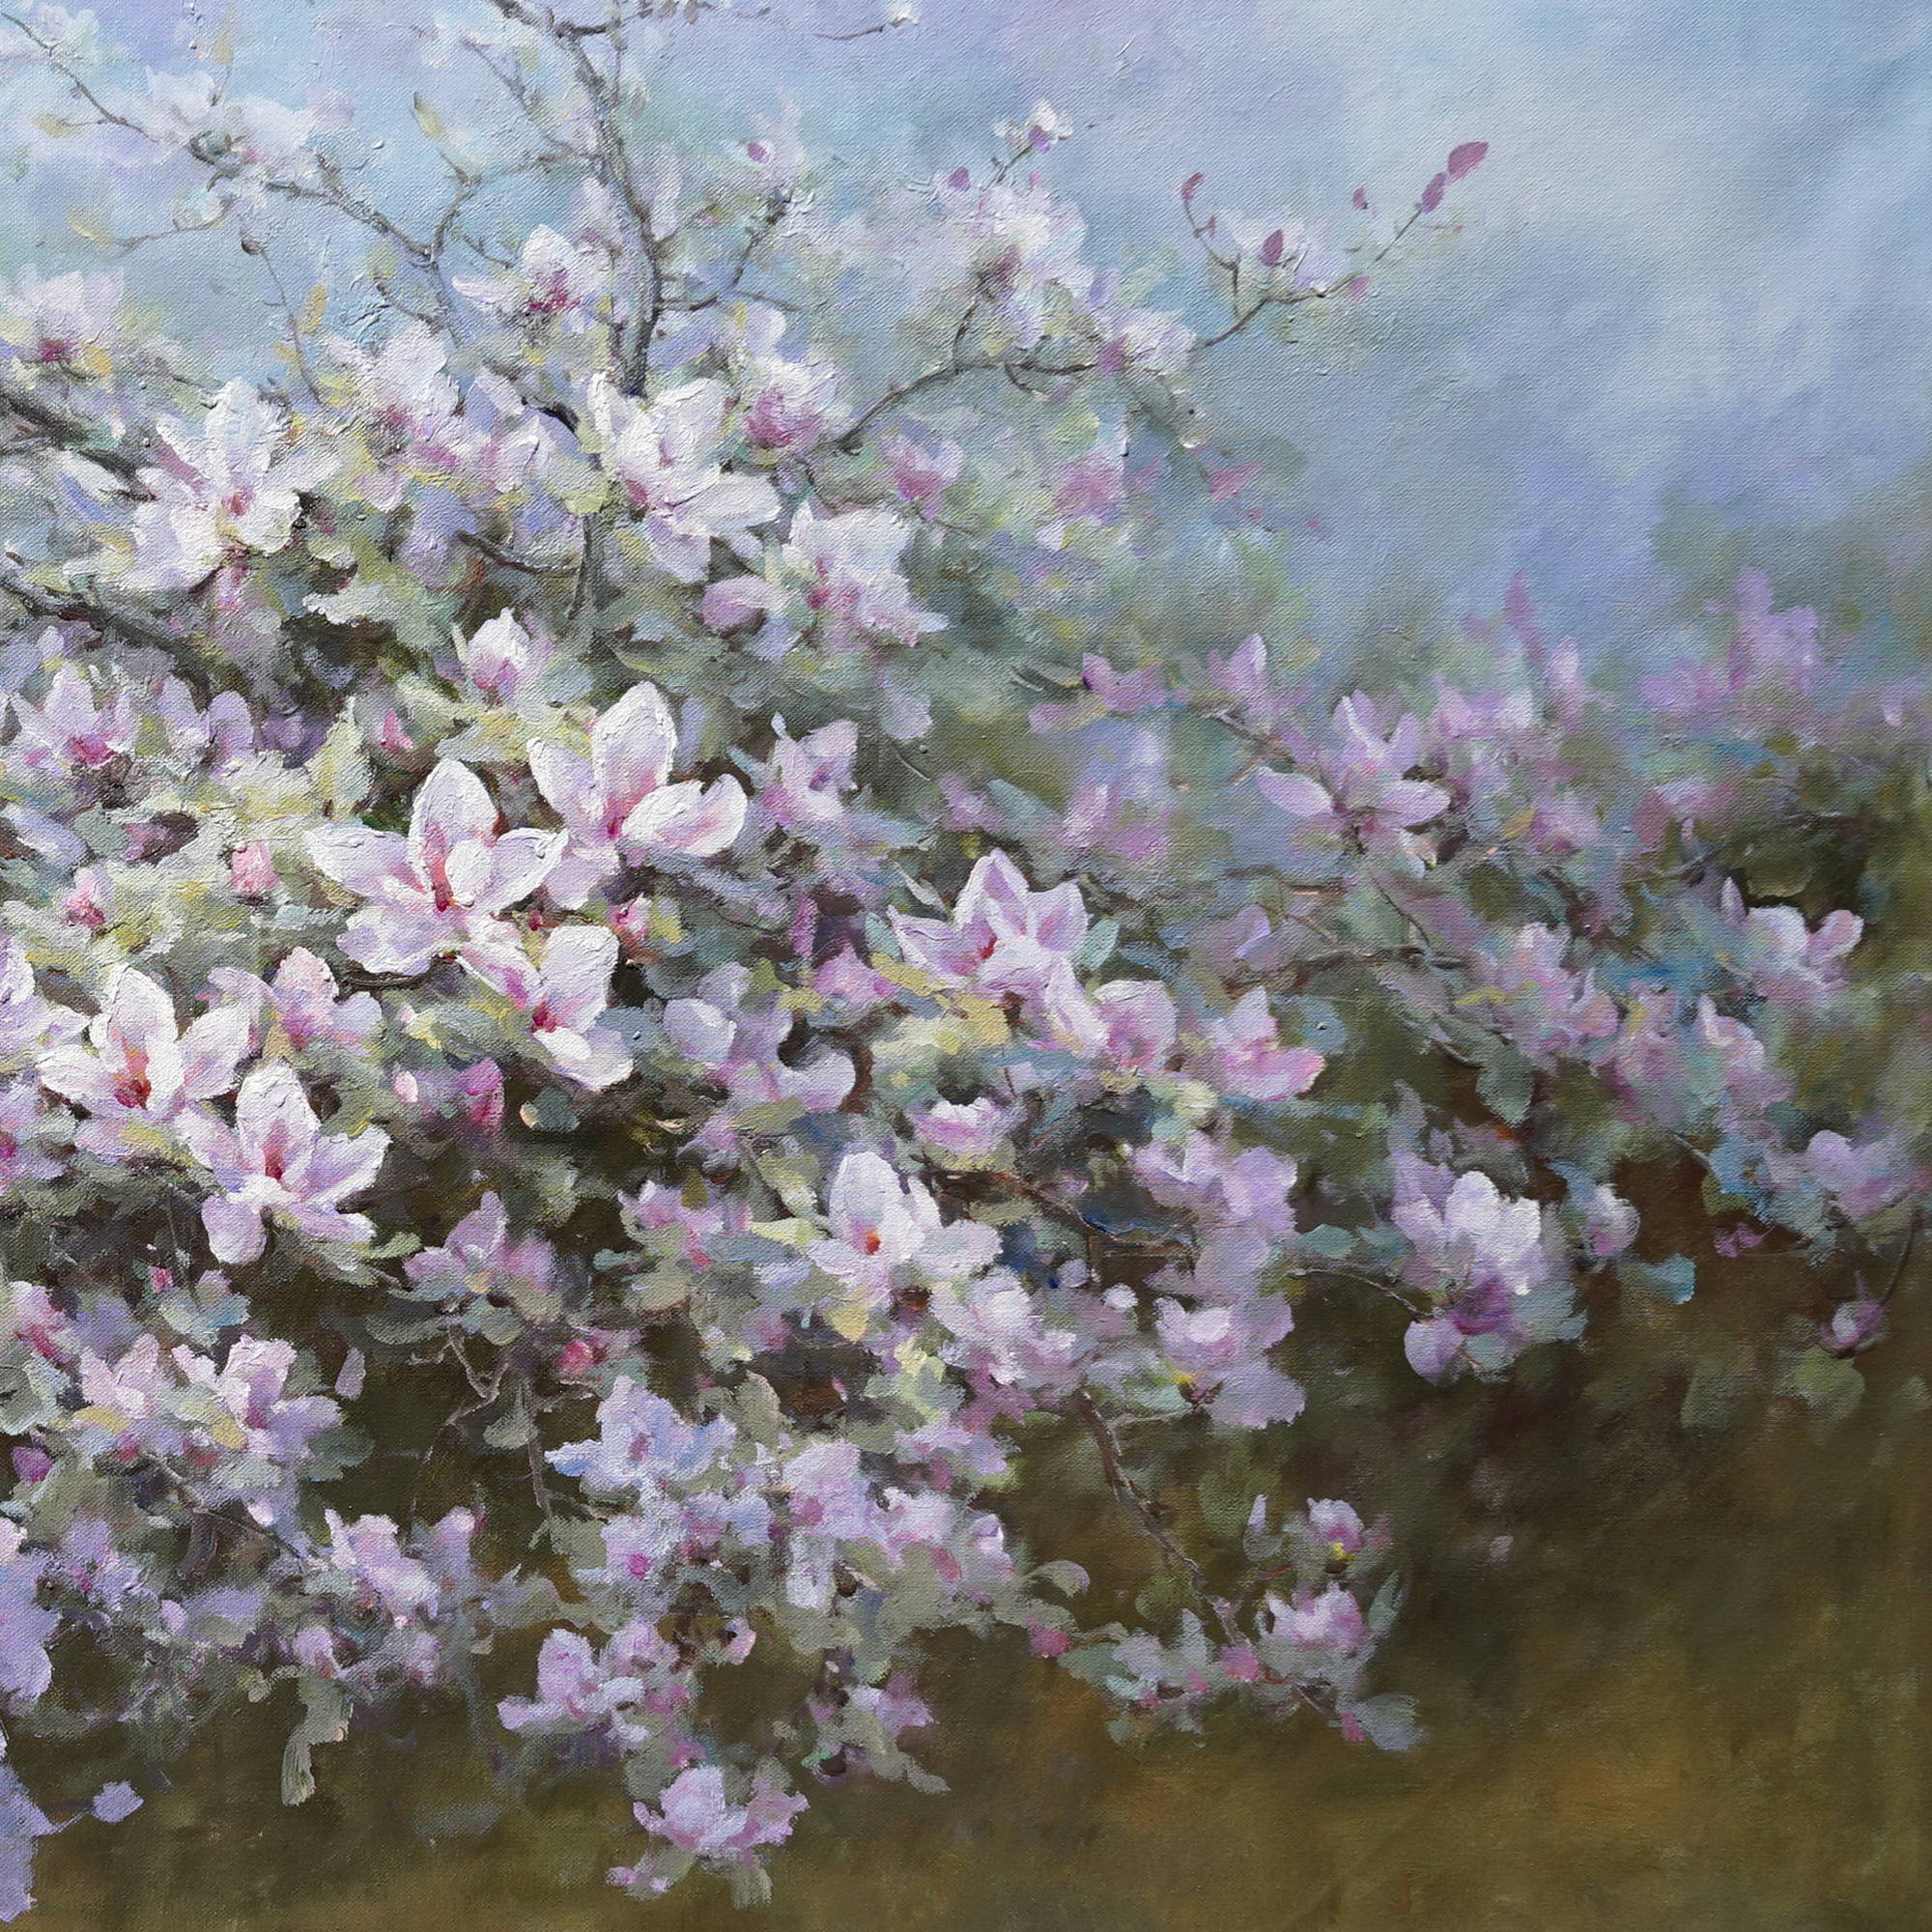 Magnolias naturels en fleurs peints à la main 90x180cm